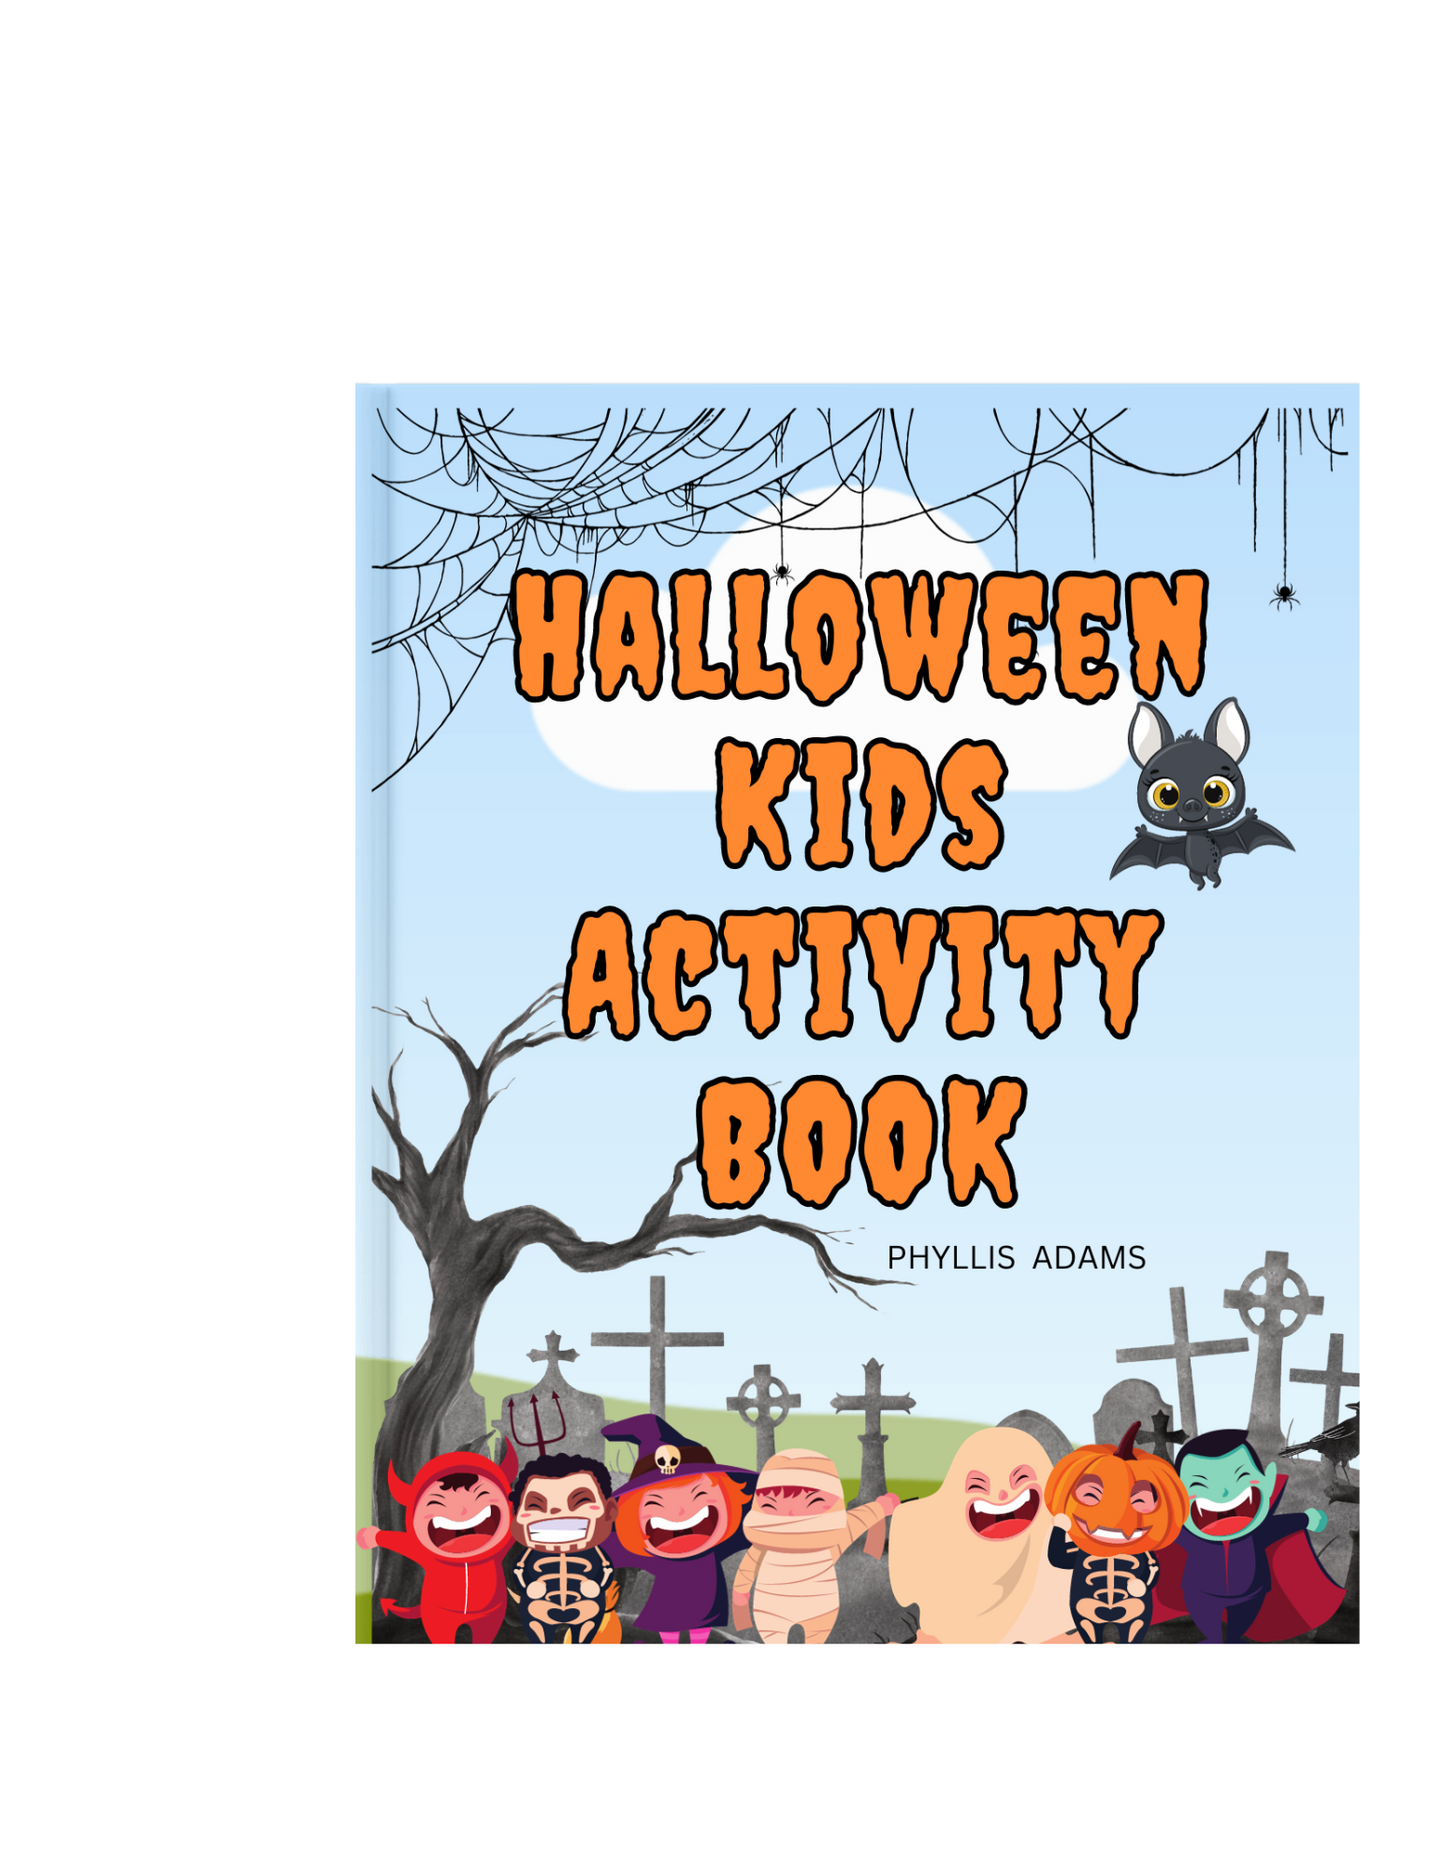 HALLOWEEN KIDS ACTIVITY BOOK